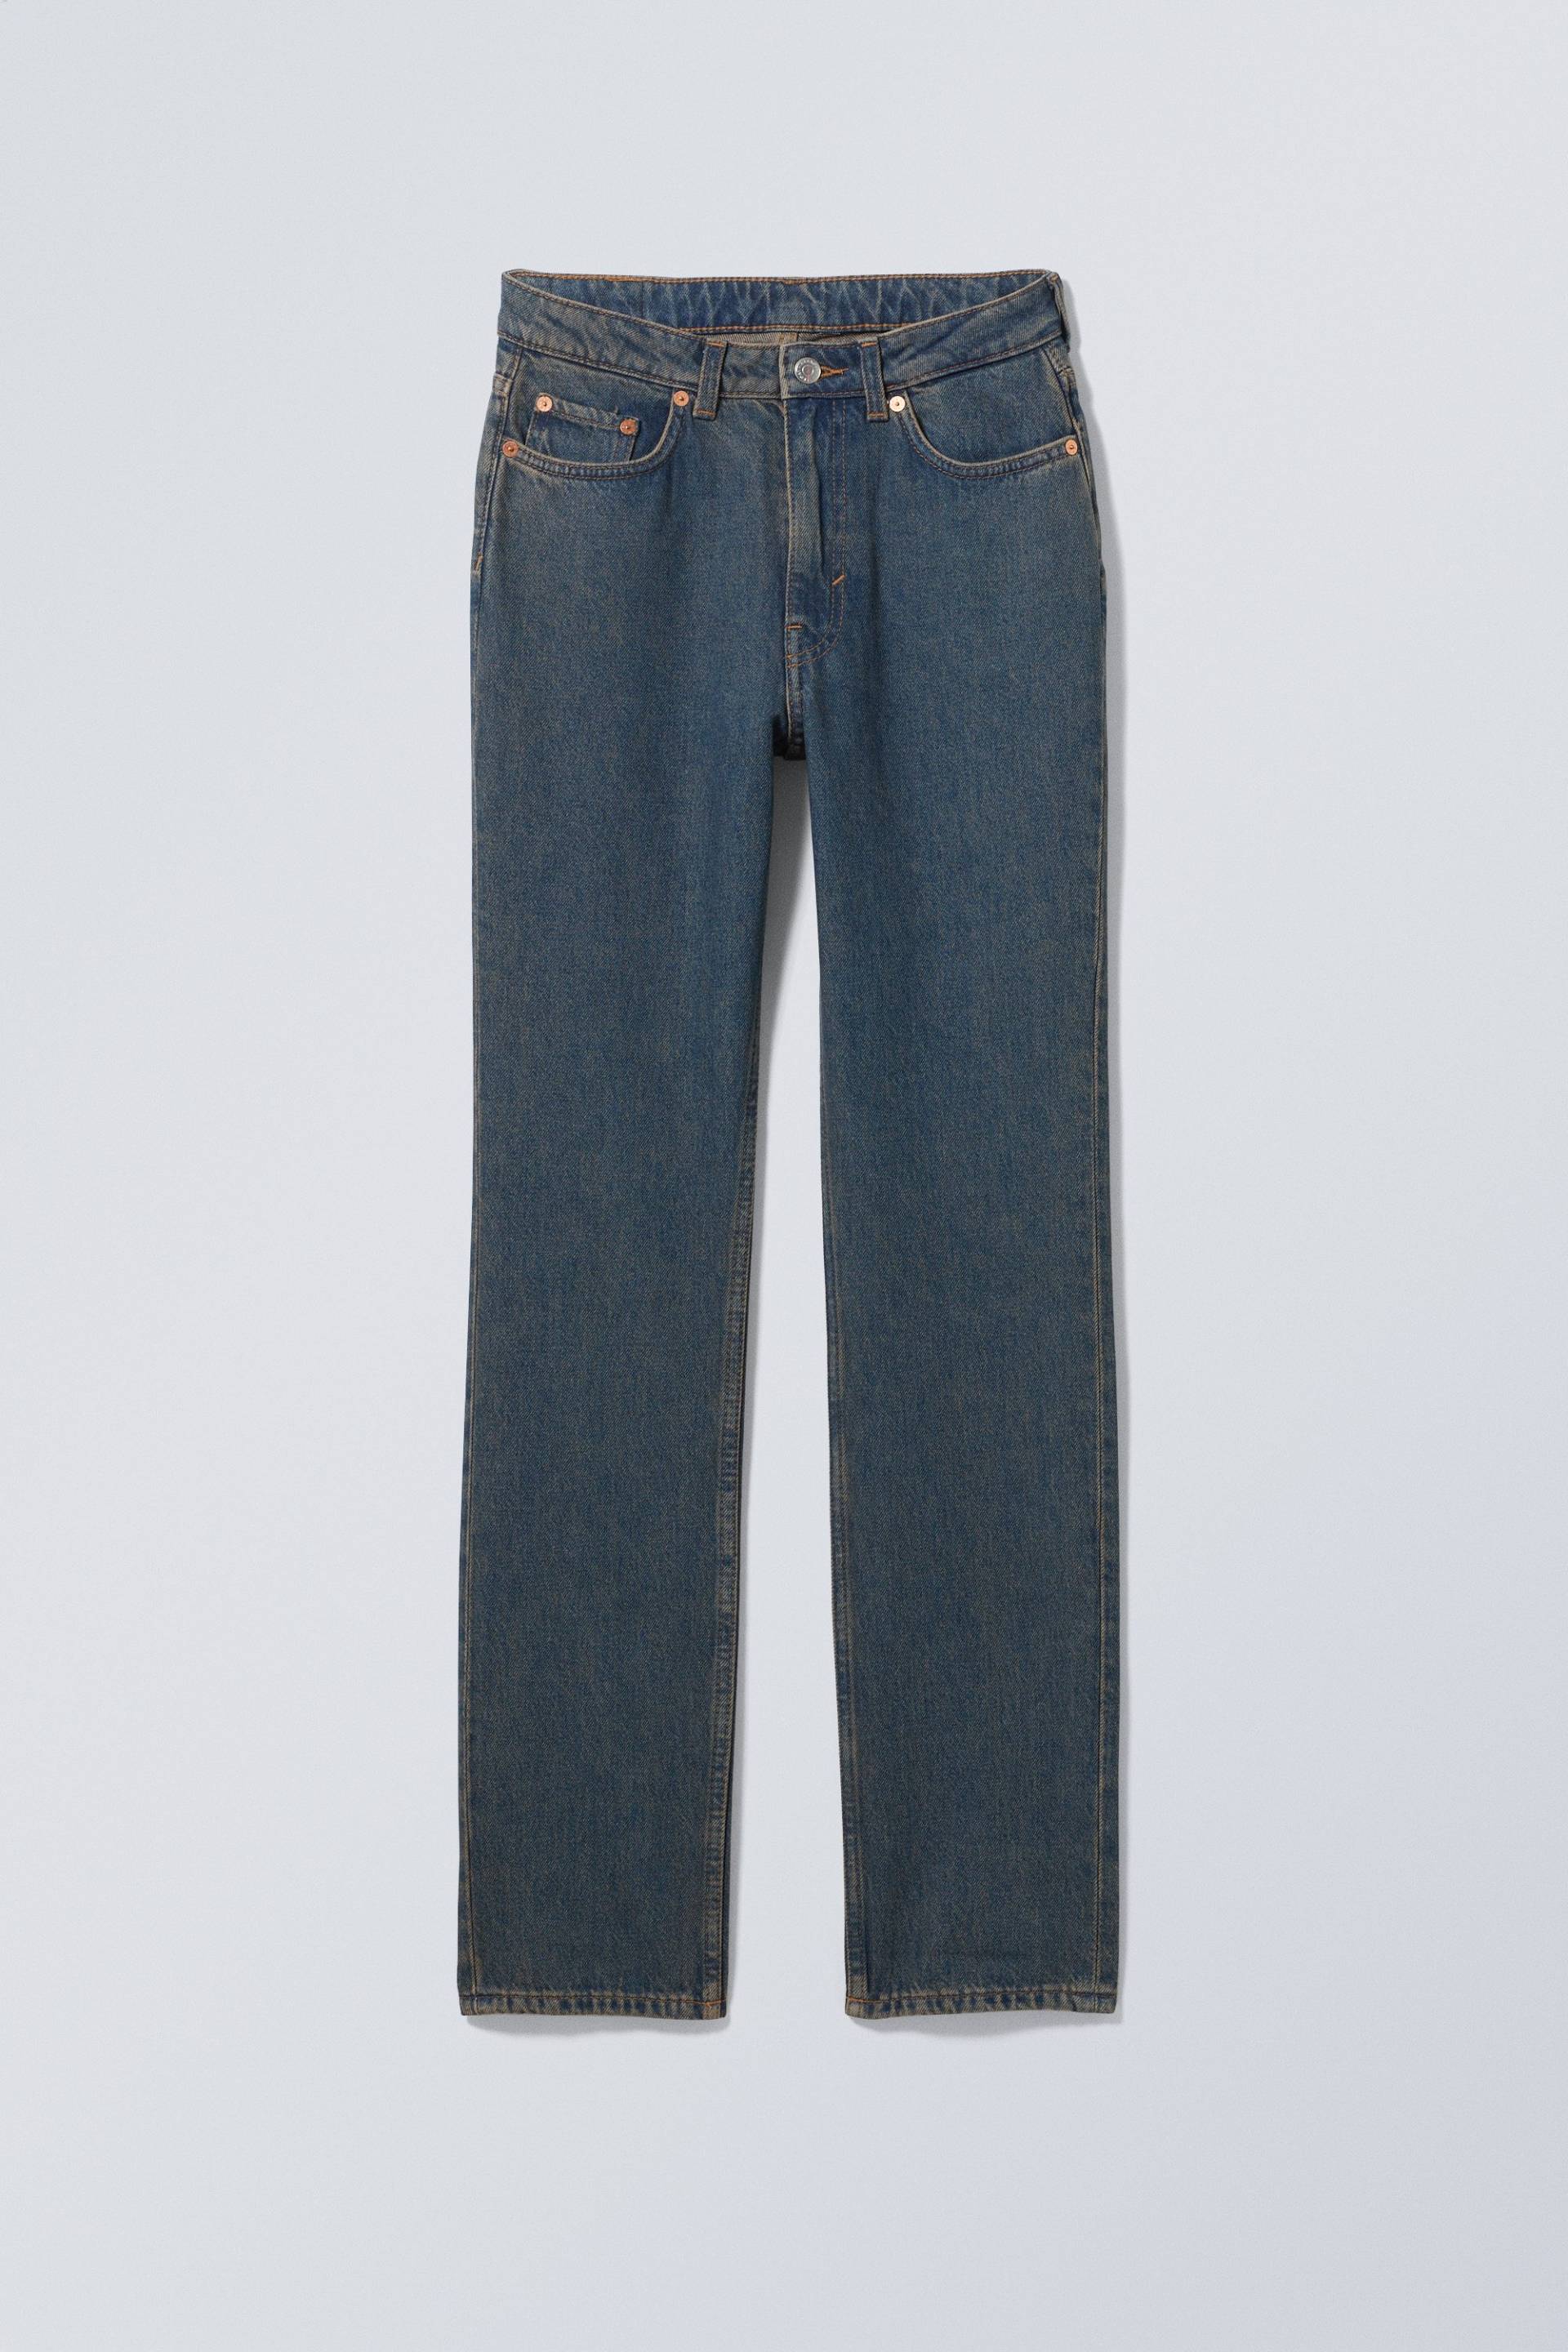 Weekday Schmale Jeans City mit hohem Bund Lapisblau, Skinny in Größe 29/30. Farbe: Lapis blue von Weekday